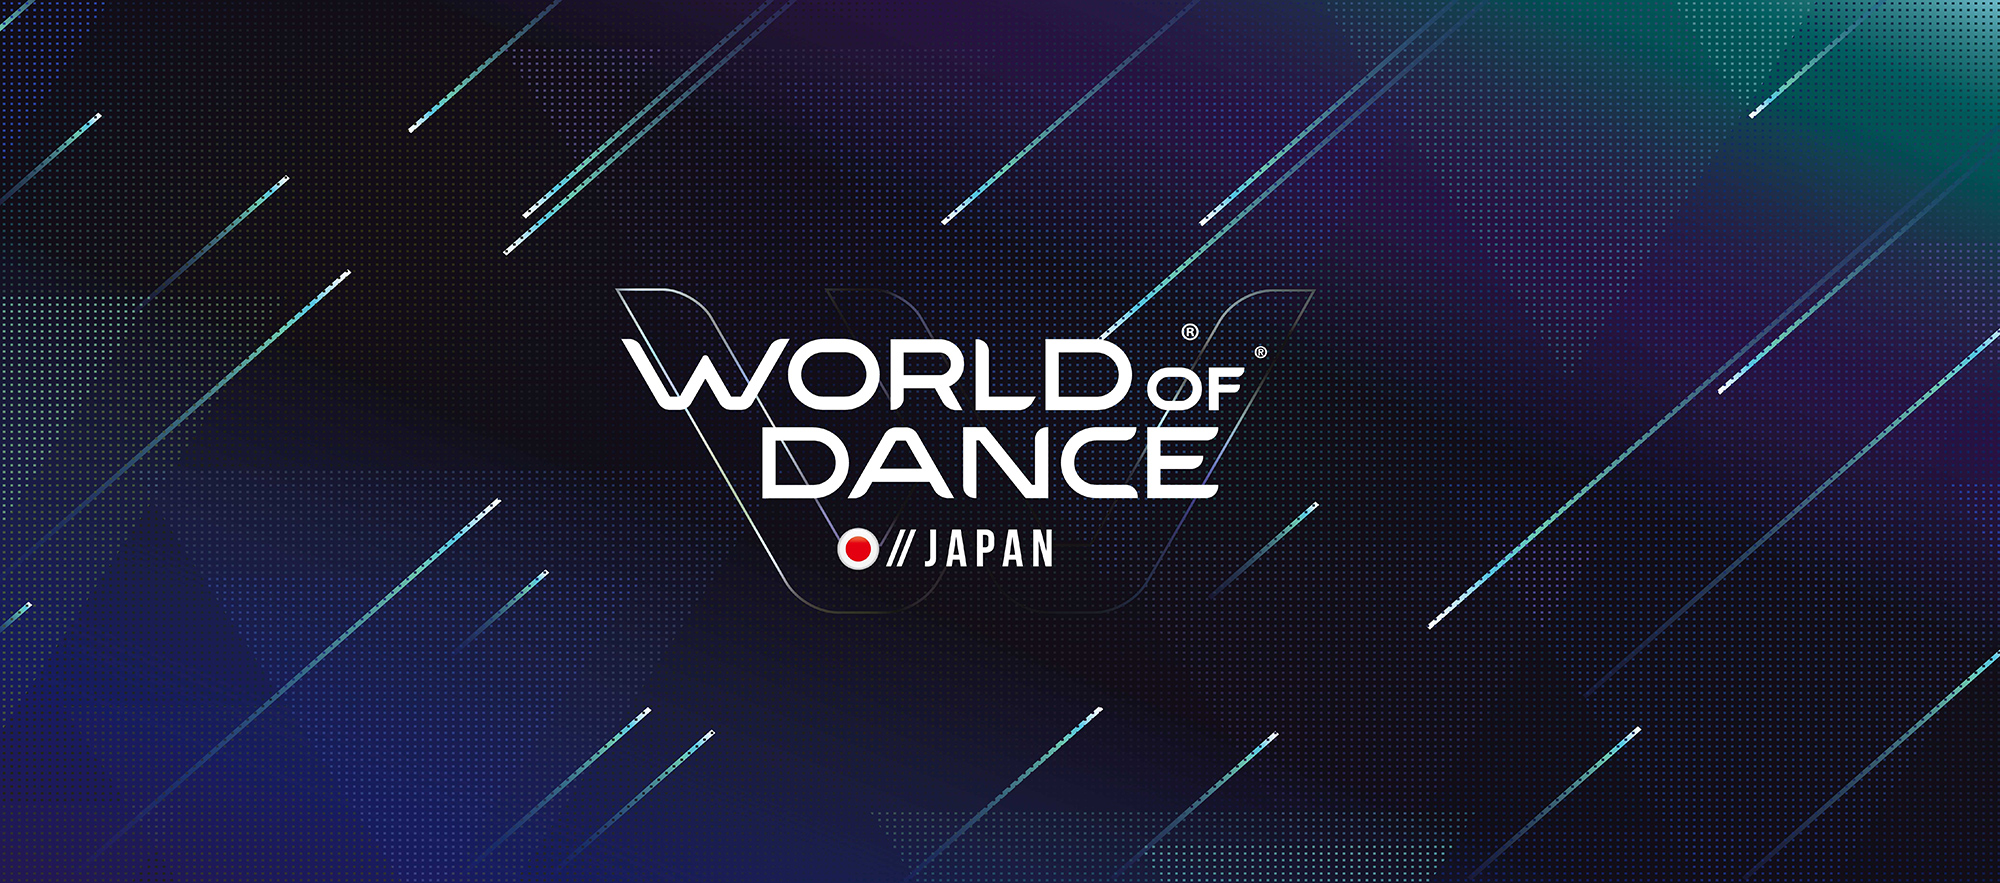 World of Dance Japan サイト オープンしました